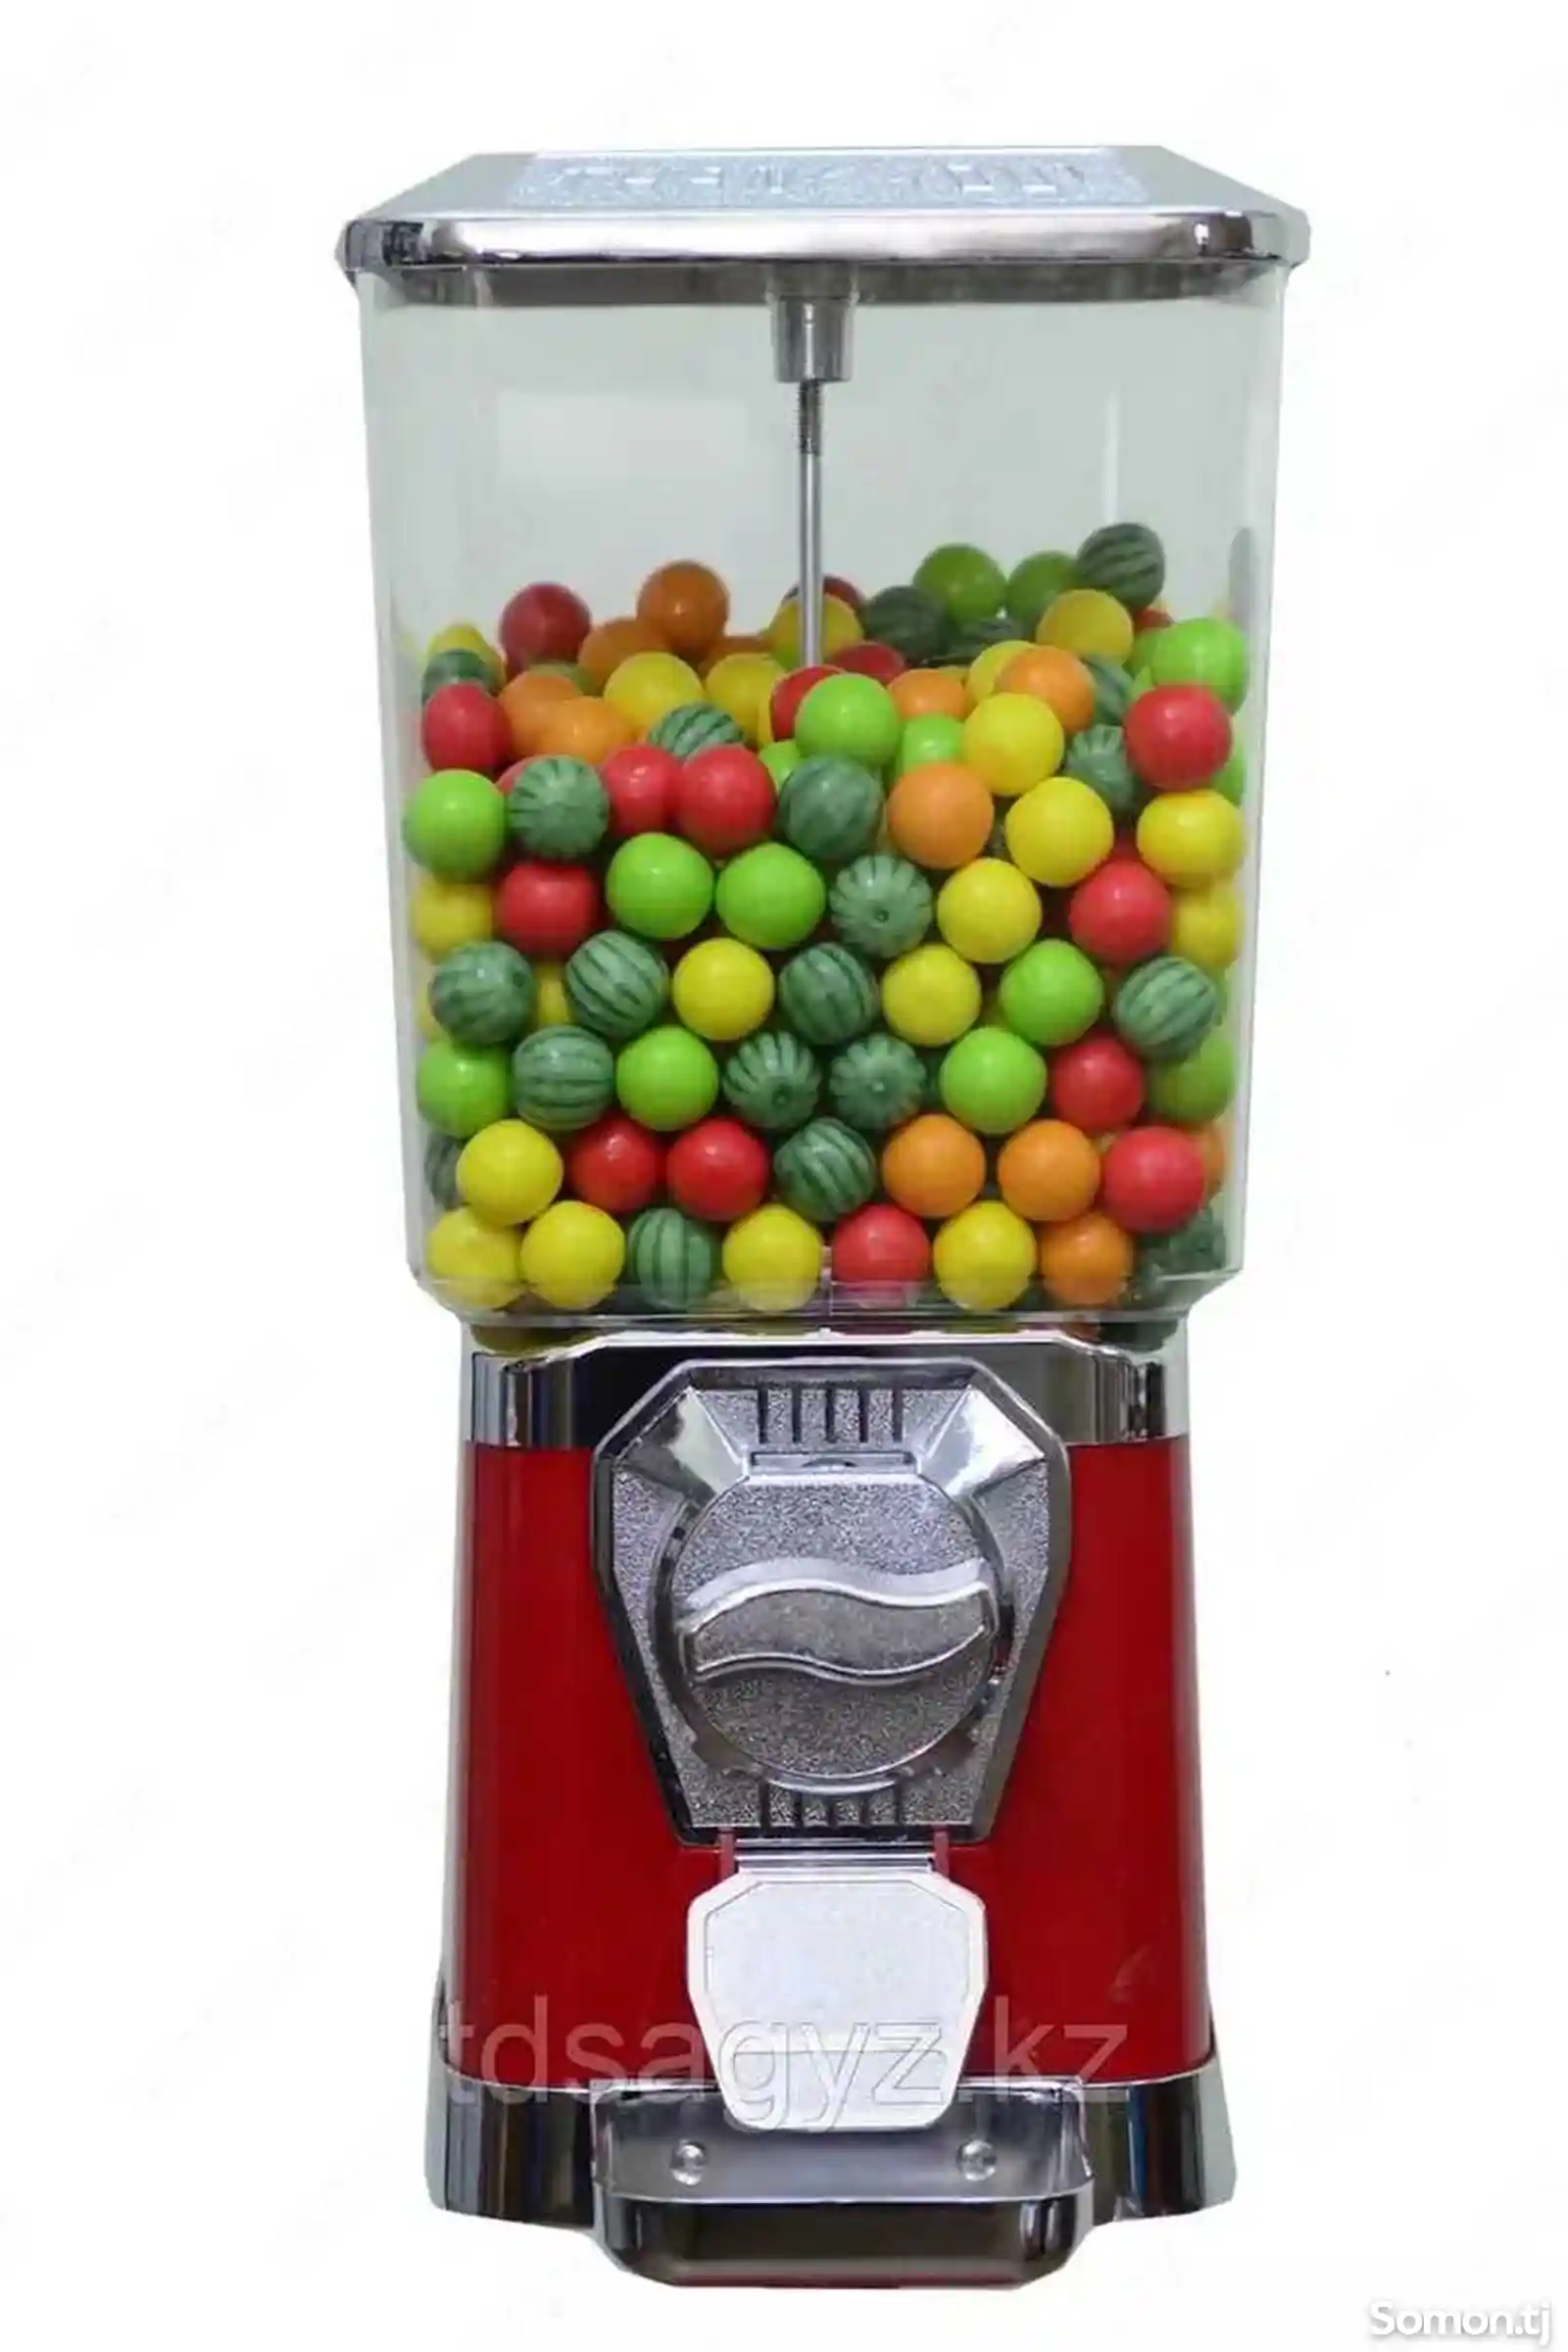 Механические автоматы по продажам жевательных резинок, мячей прыгунов-4